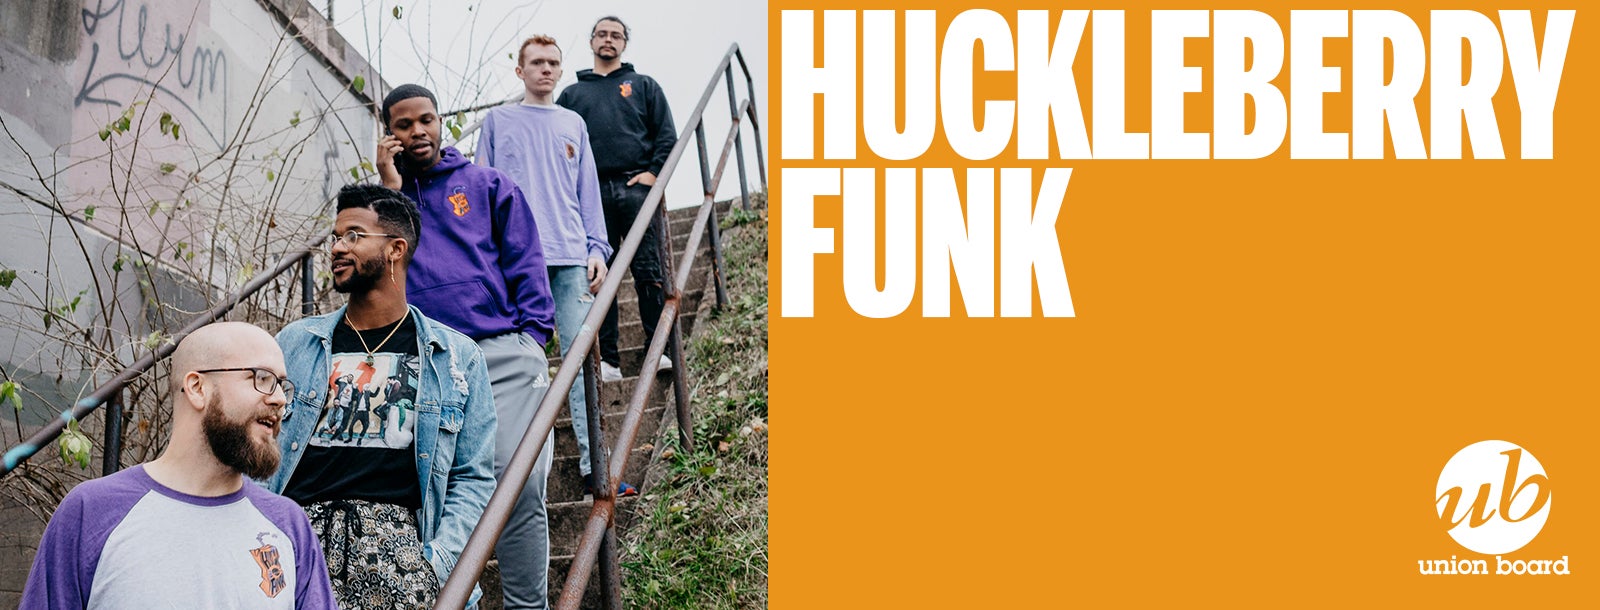 Huckleberry Funk